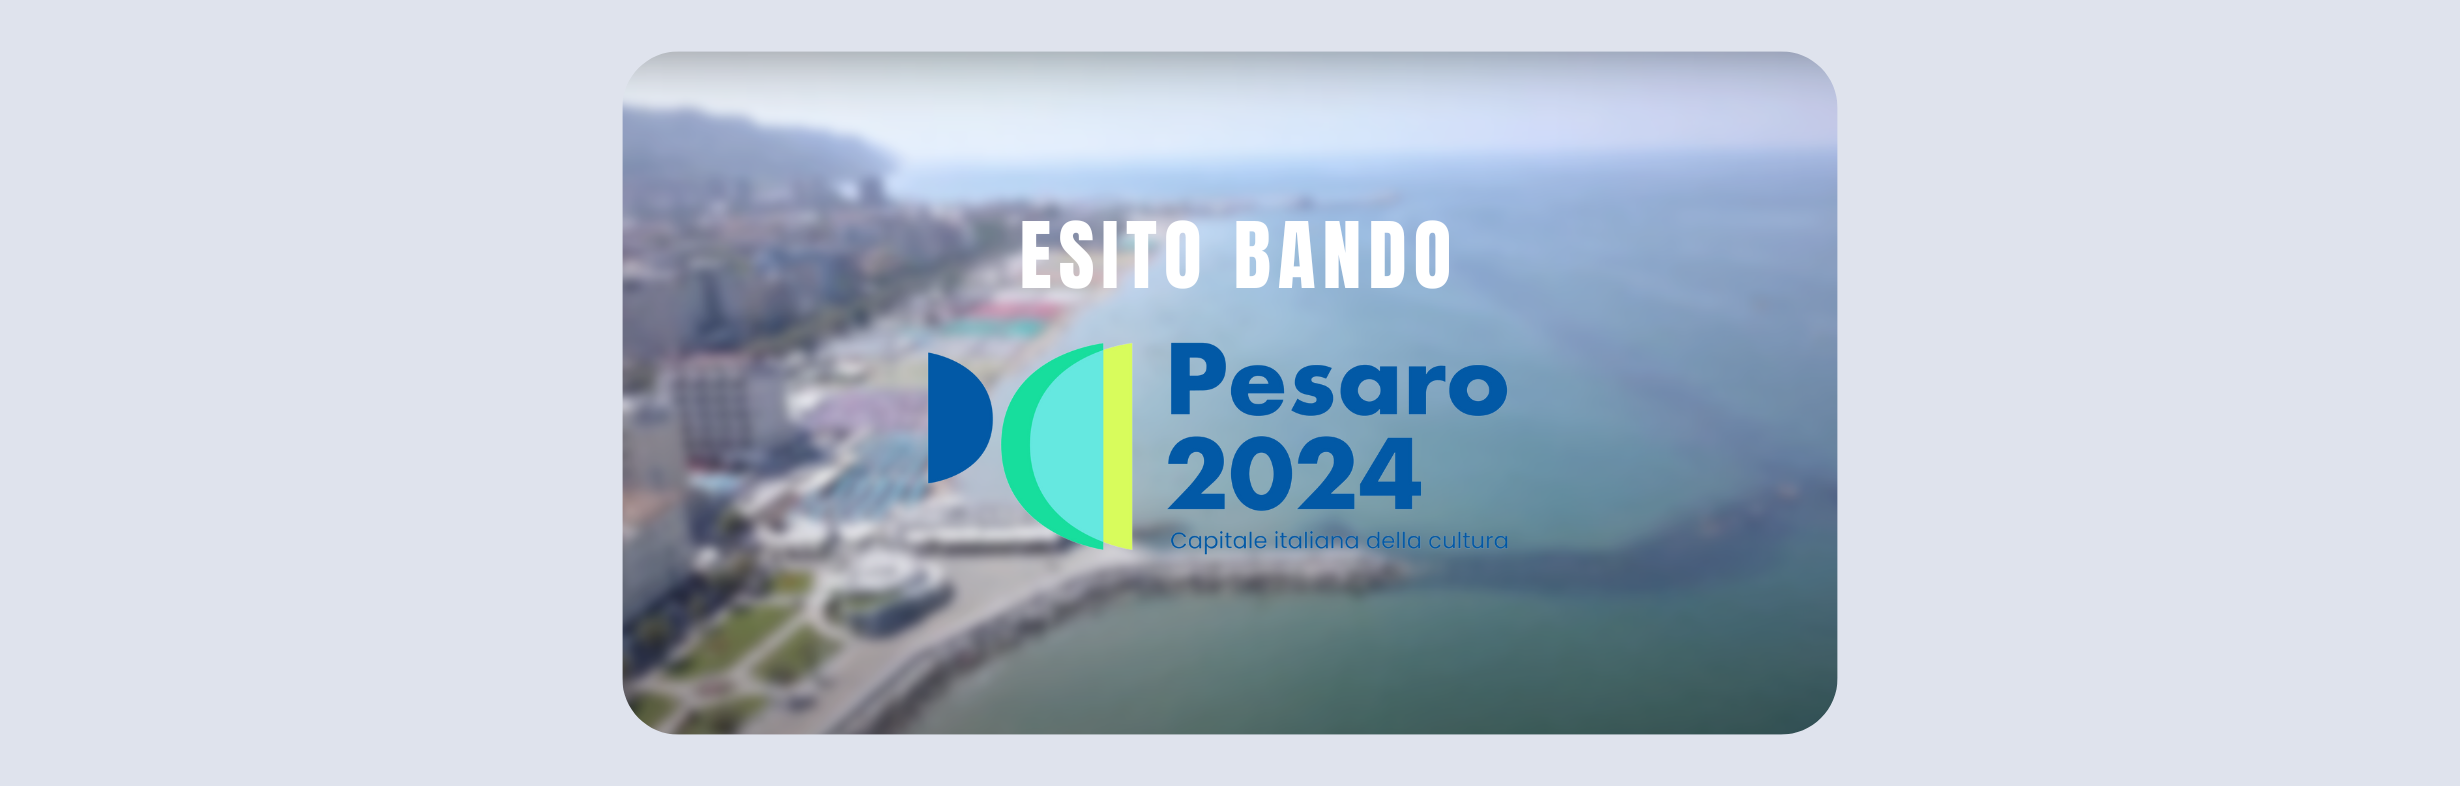 Esito Bando per “PESARO CAPITALE ITALIANA DELLA CULTURA 2024”